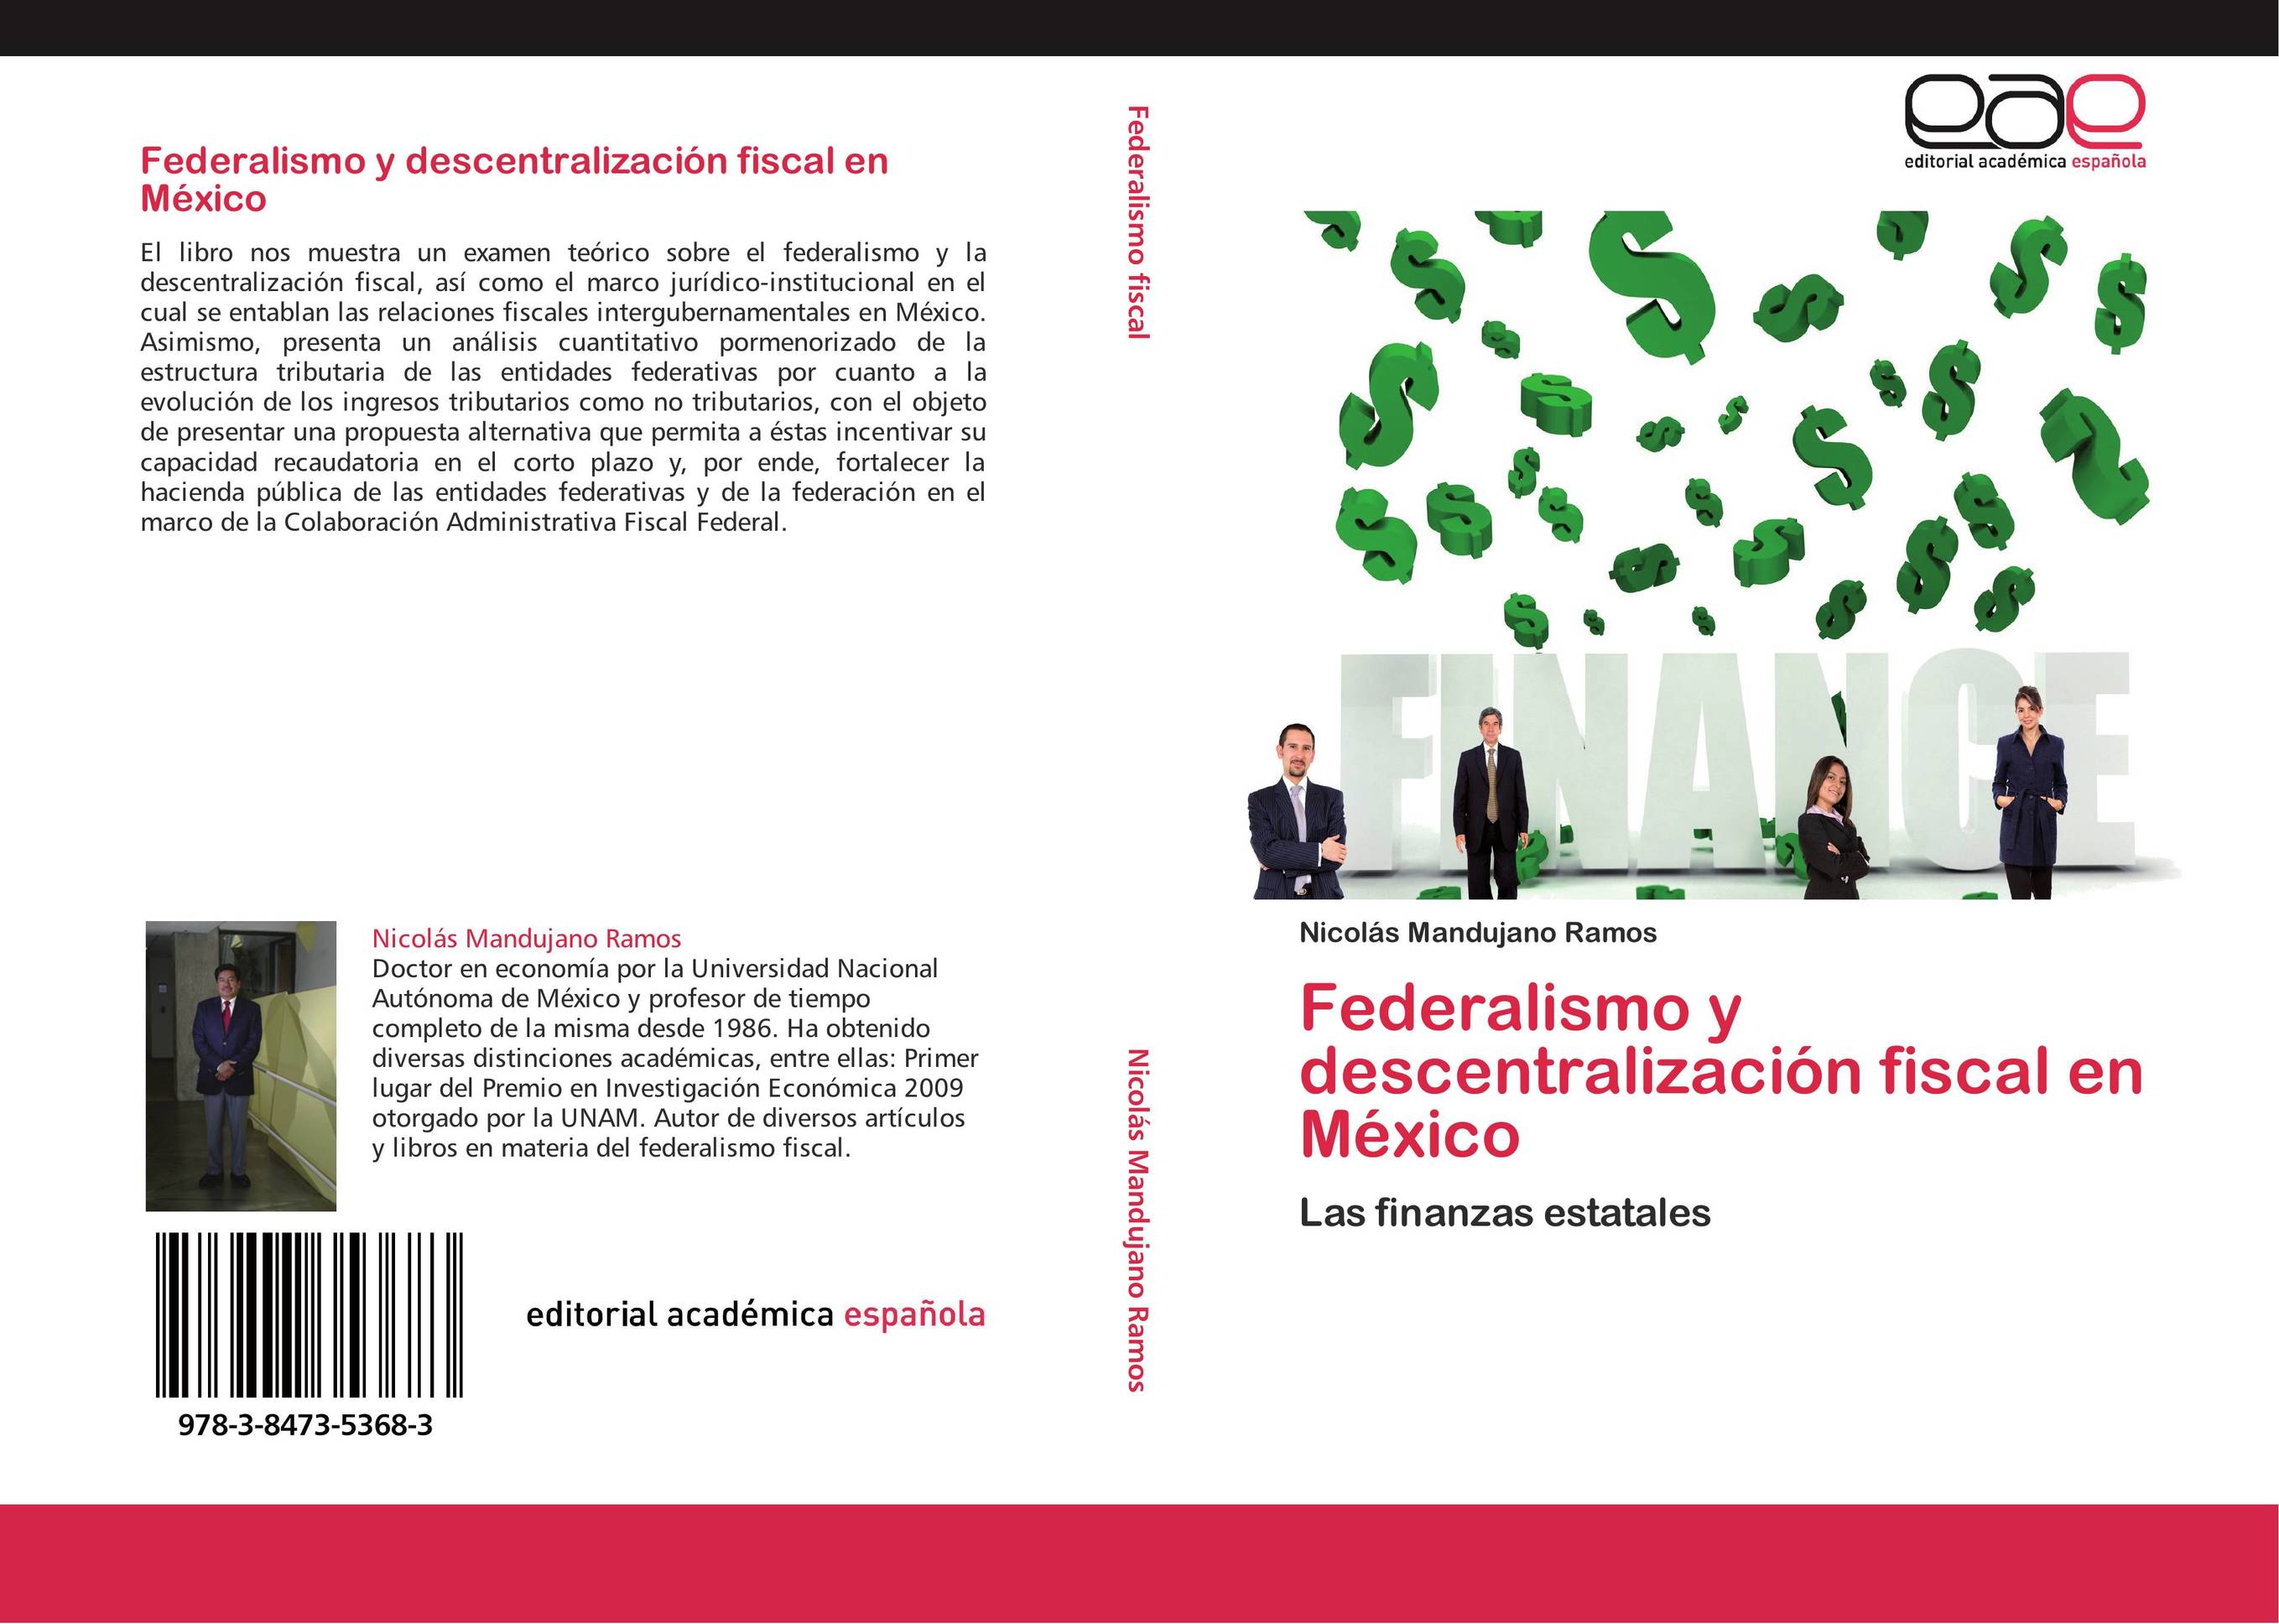 Federalismo y descentralización fiscal en México